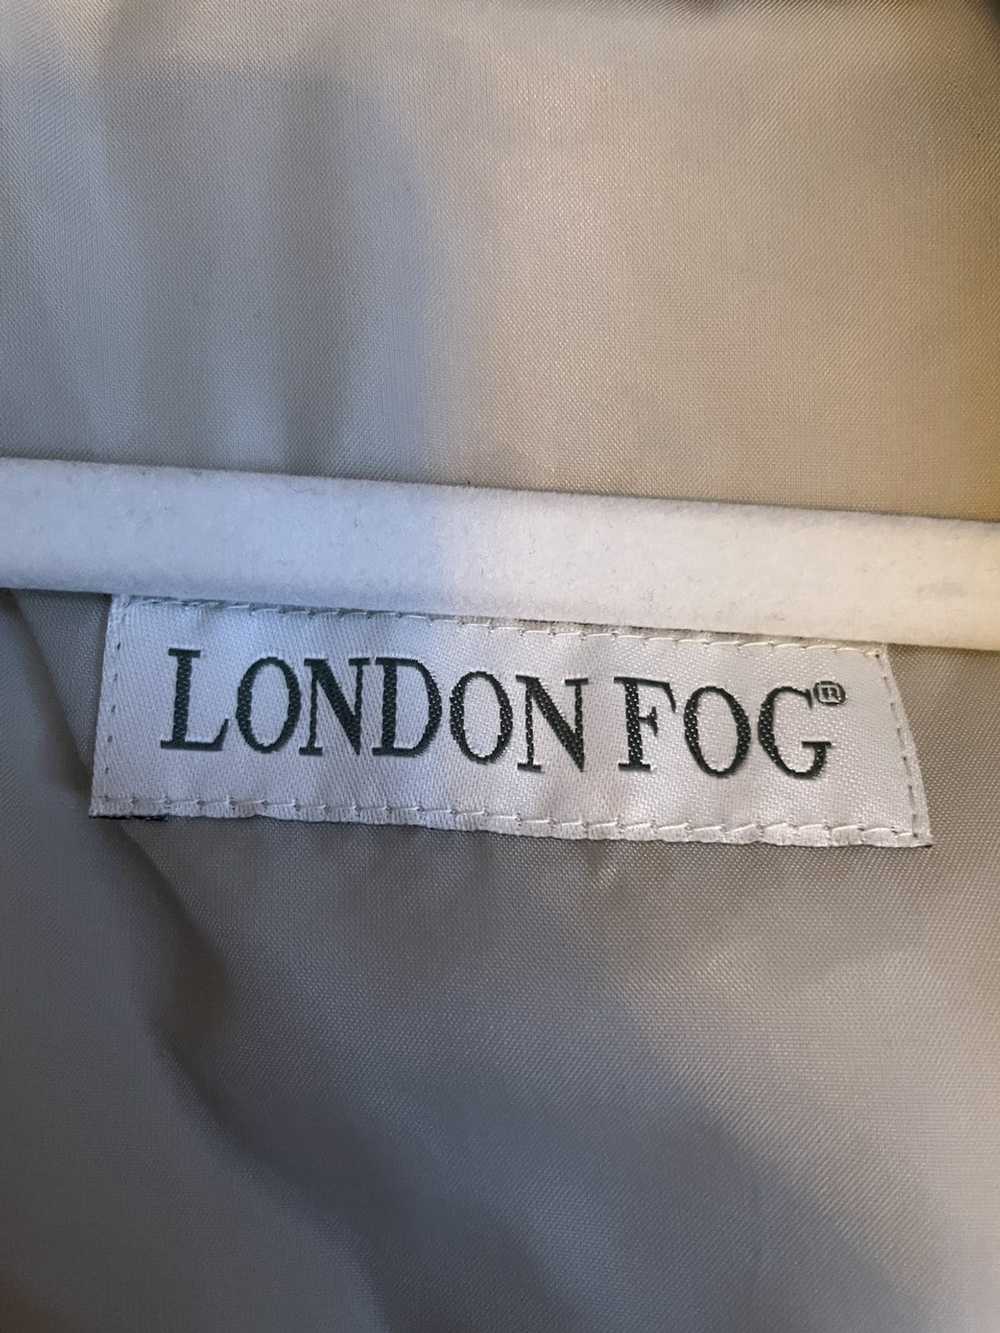 London Fog vintage london fog slim raincoat - image 3